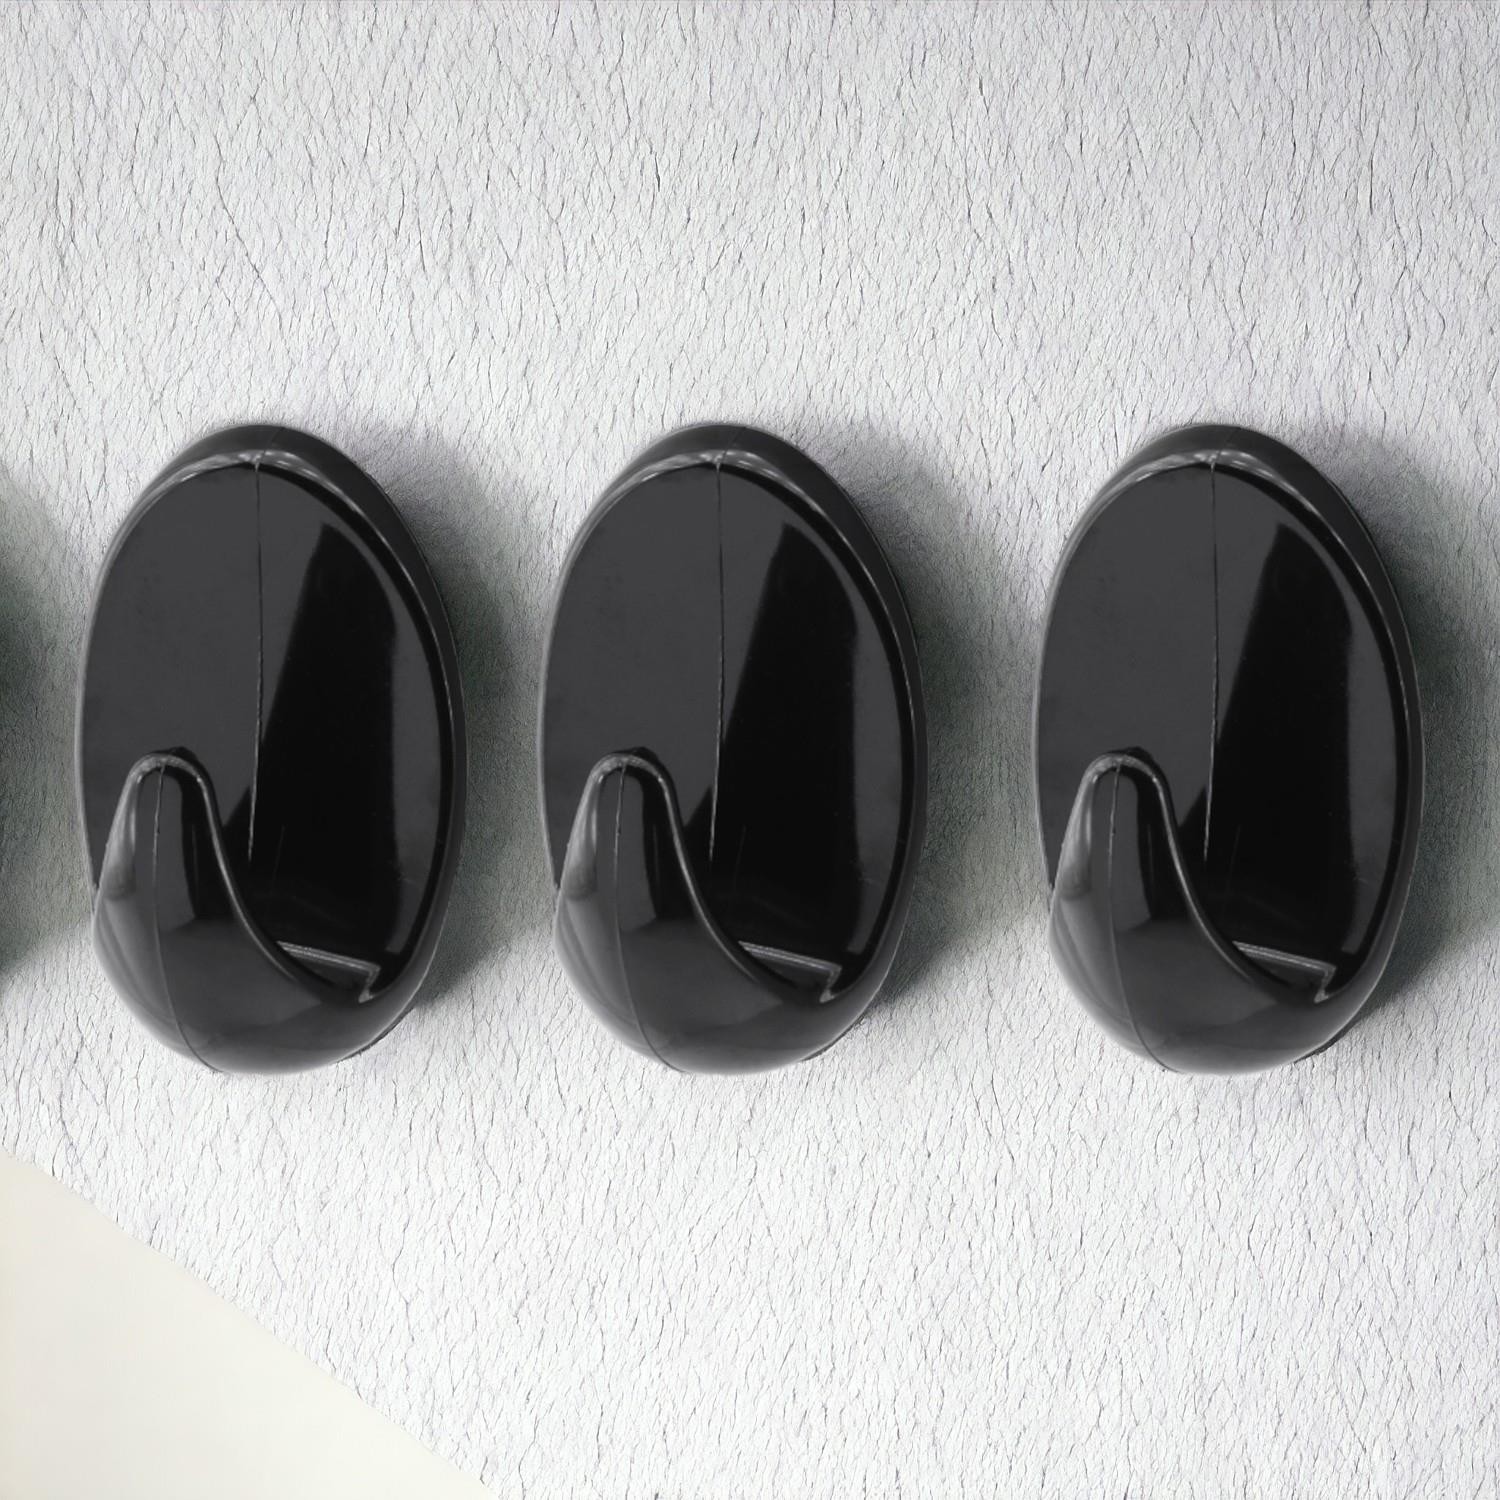 Yapışkanlı Banyo Lavabo Mutfak Askılık Siyah Plastik Sağlam Asma İz Bırakmayan Askı 3 Adetli Set 